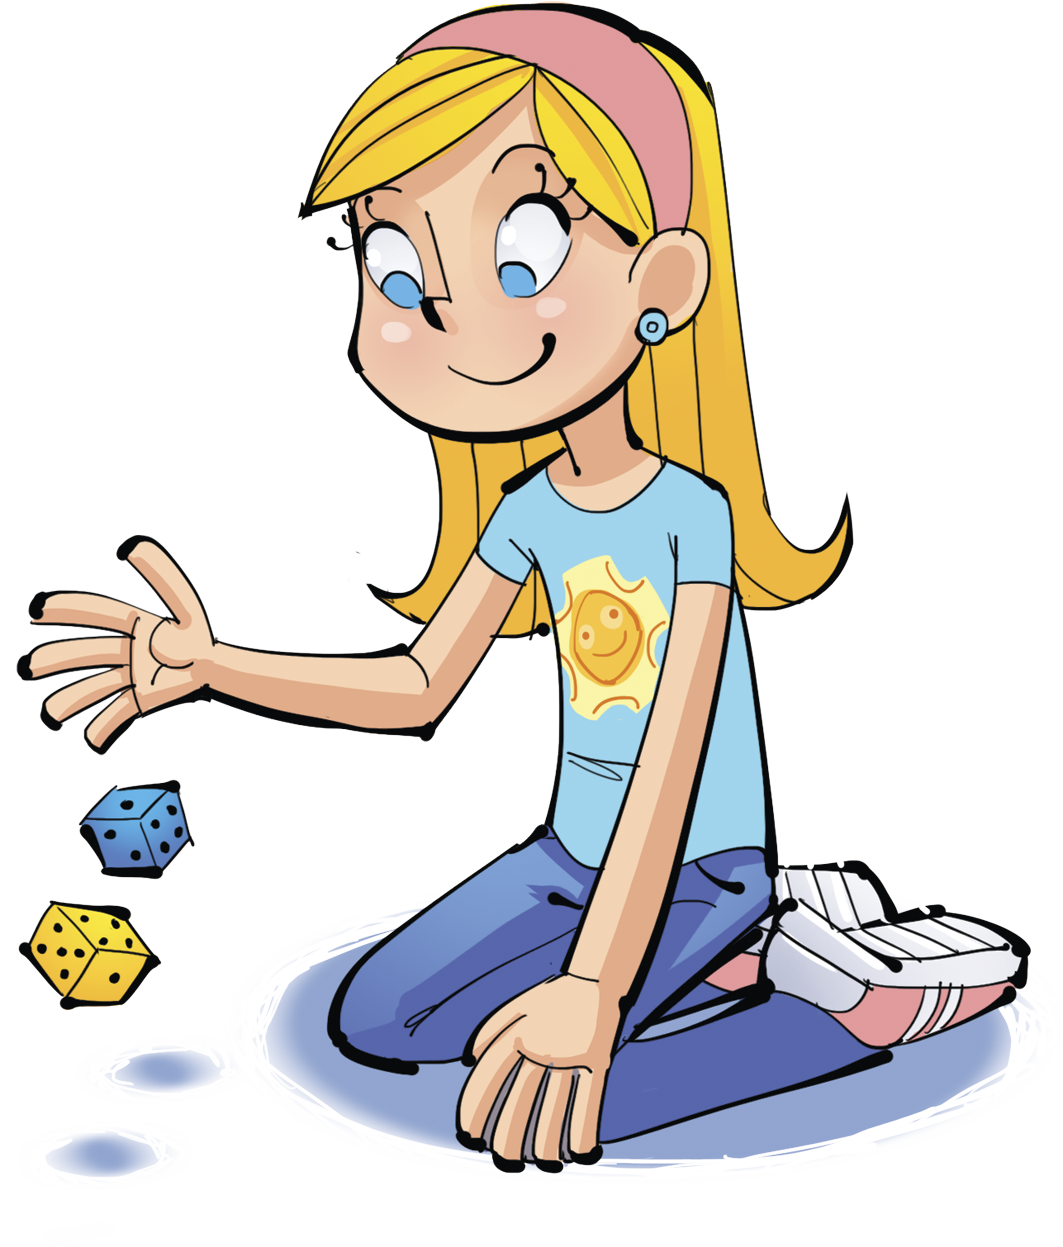 Ilustração. Menina loira de camiseta azul. Ela está ajoelhada no chão e joga 2 dados um azul e um amarelo.